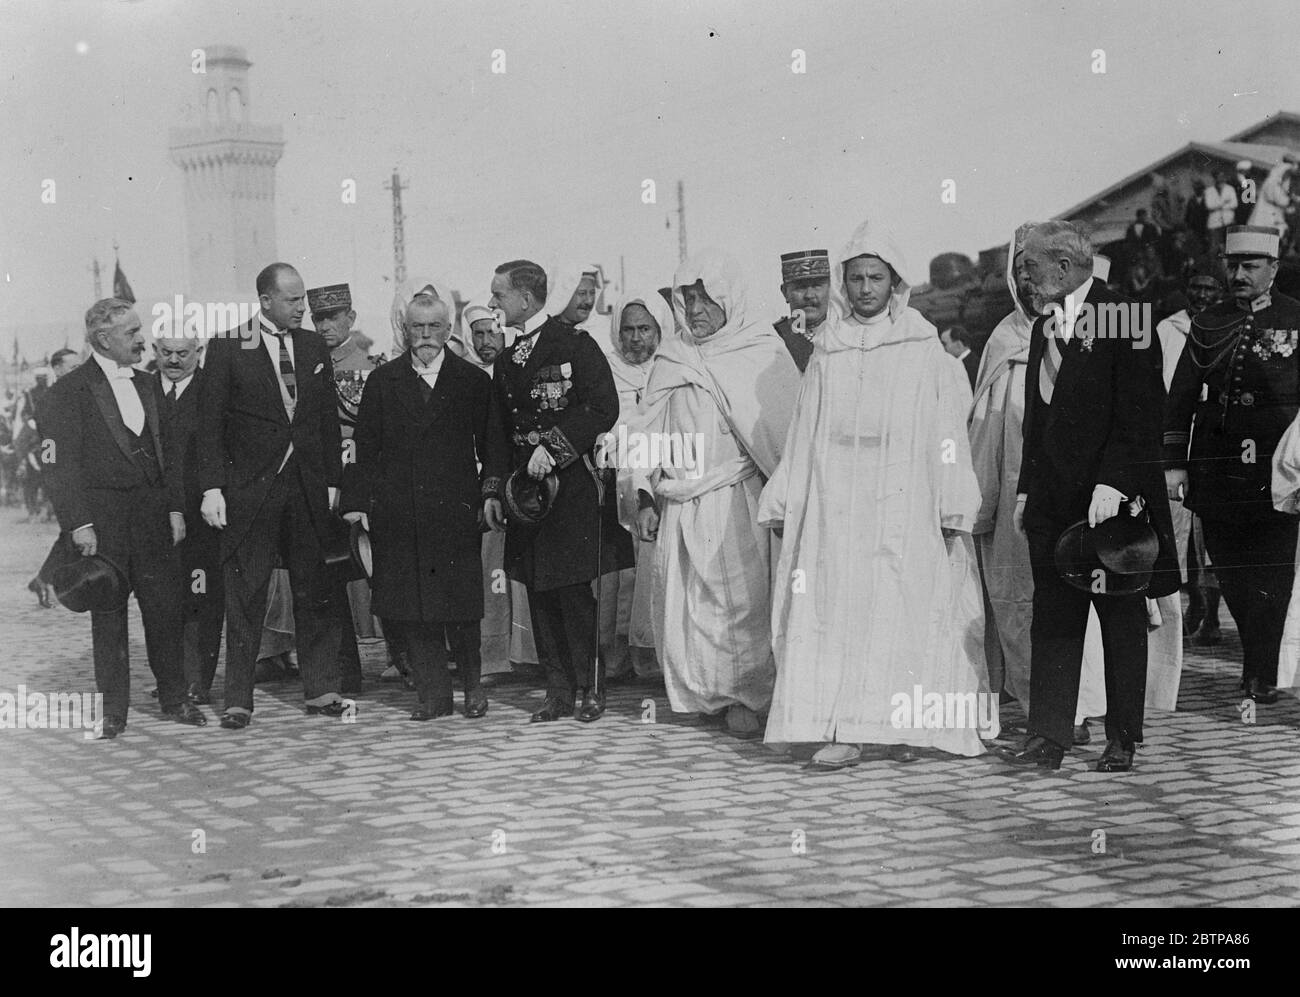 Casablanca begrüßt neue Sultan . Sidi Mohammed, der junge neue Sultan von Marokko, begleitet von M Steeg, der Französisch Resident General, so dass seine Staatseintrag in Casablanca. 24 Dezember 1927 Stockfoto